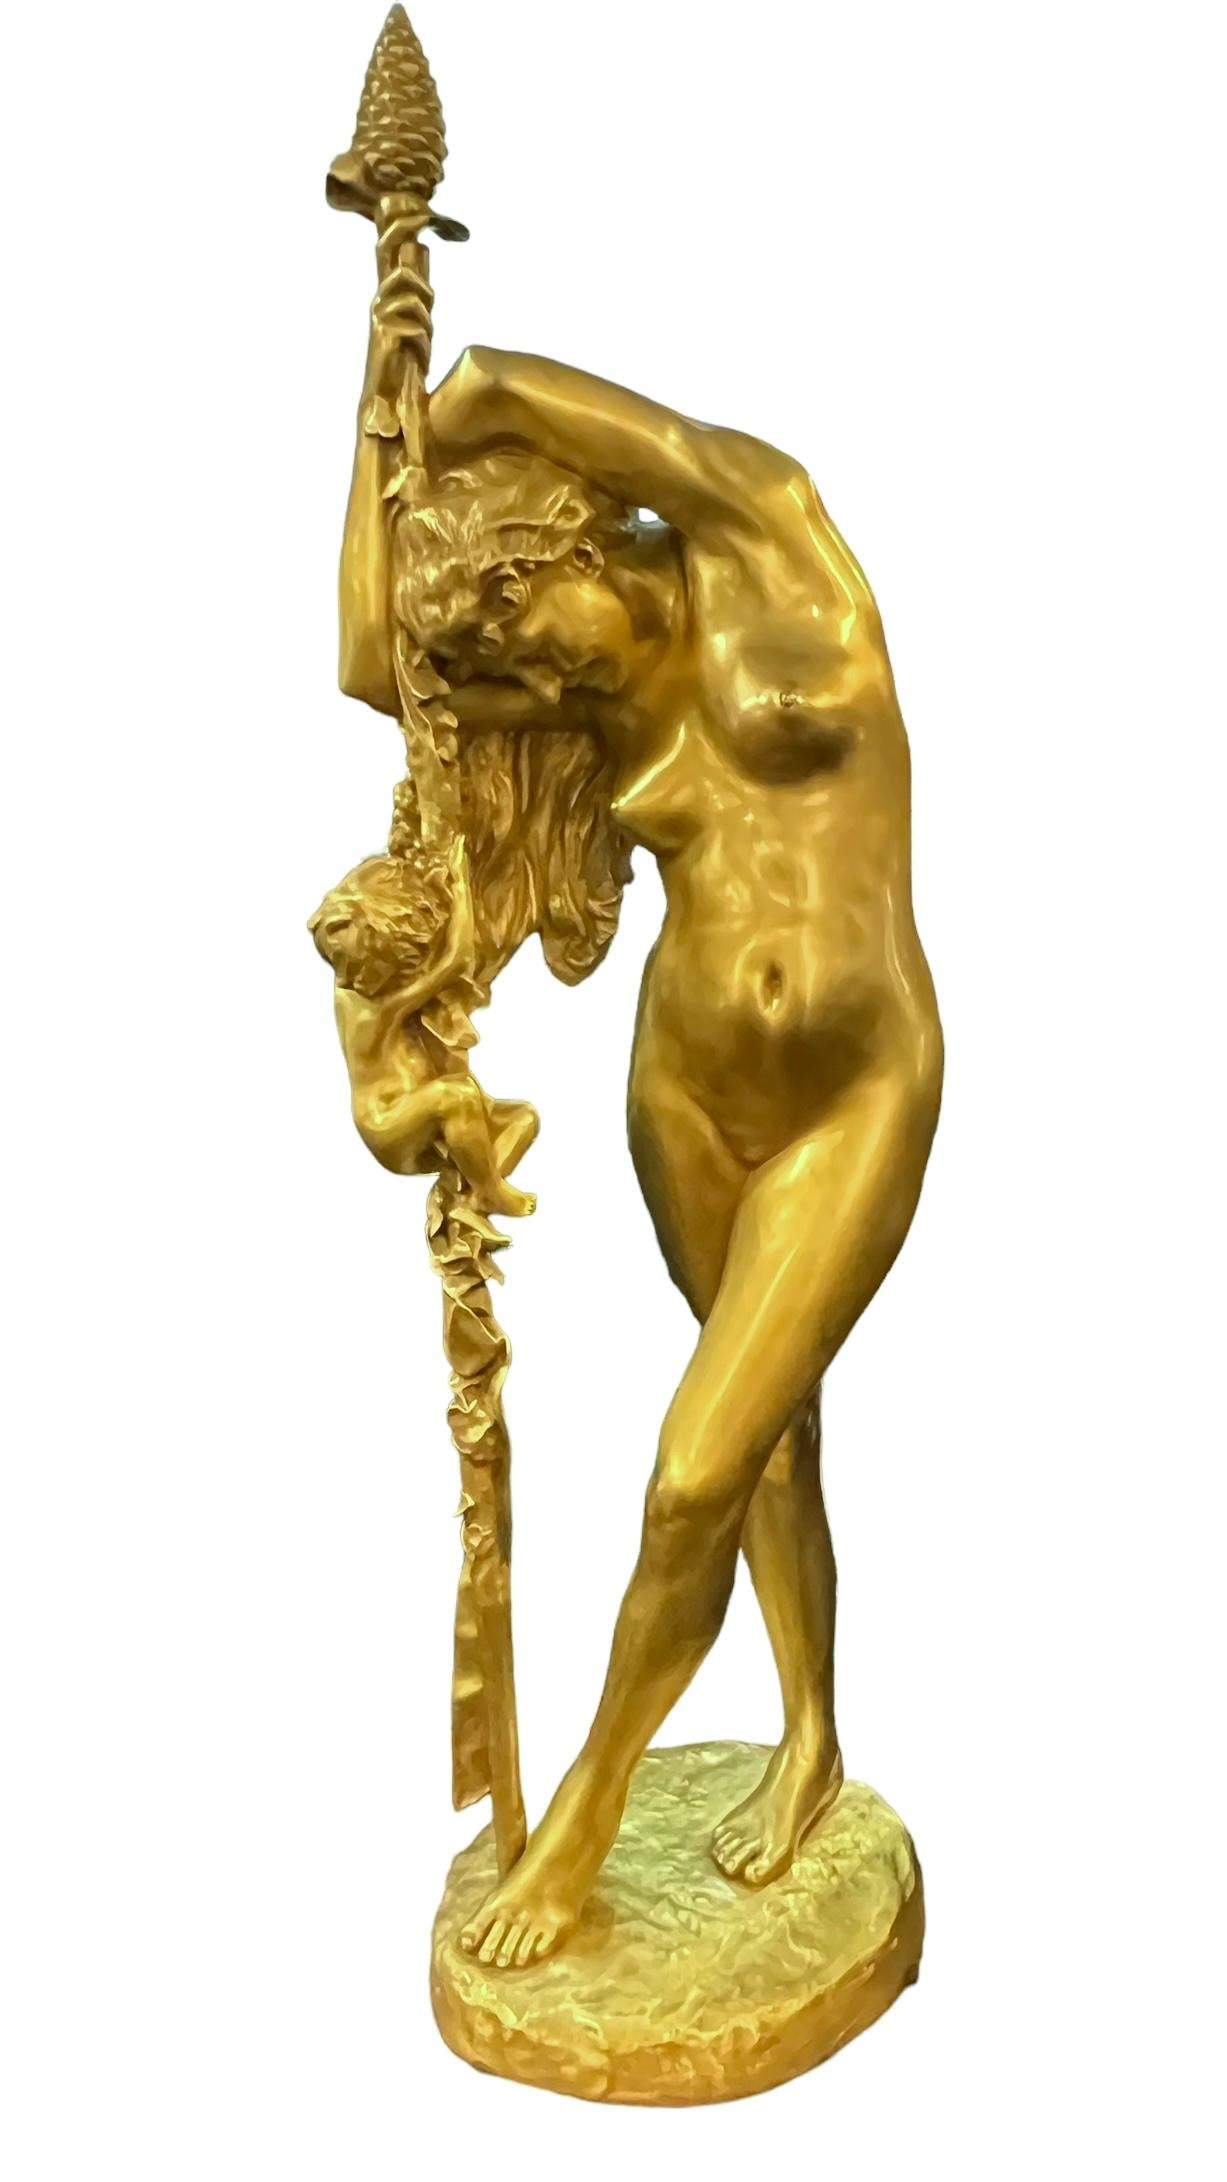 Unsere sehr große vergoldete Bronzefigur von Jean-Leon Gerome (1824-1904) zeigt Venus, die sich auf einen dionysischen Stab mit Tannenzapfenabschluss stützt, während Amor den Stab hinaufklettert.  Basierend auf der Kennzeichnung JL GEROME.